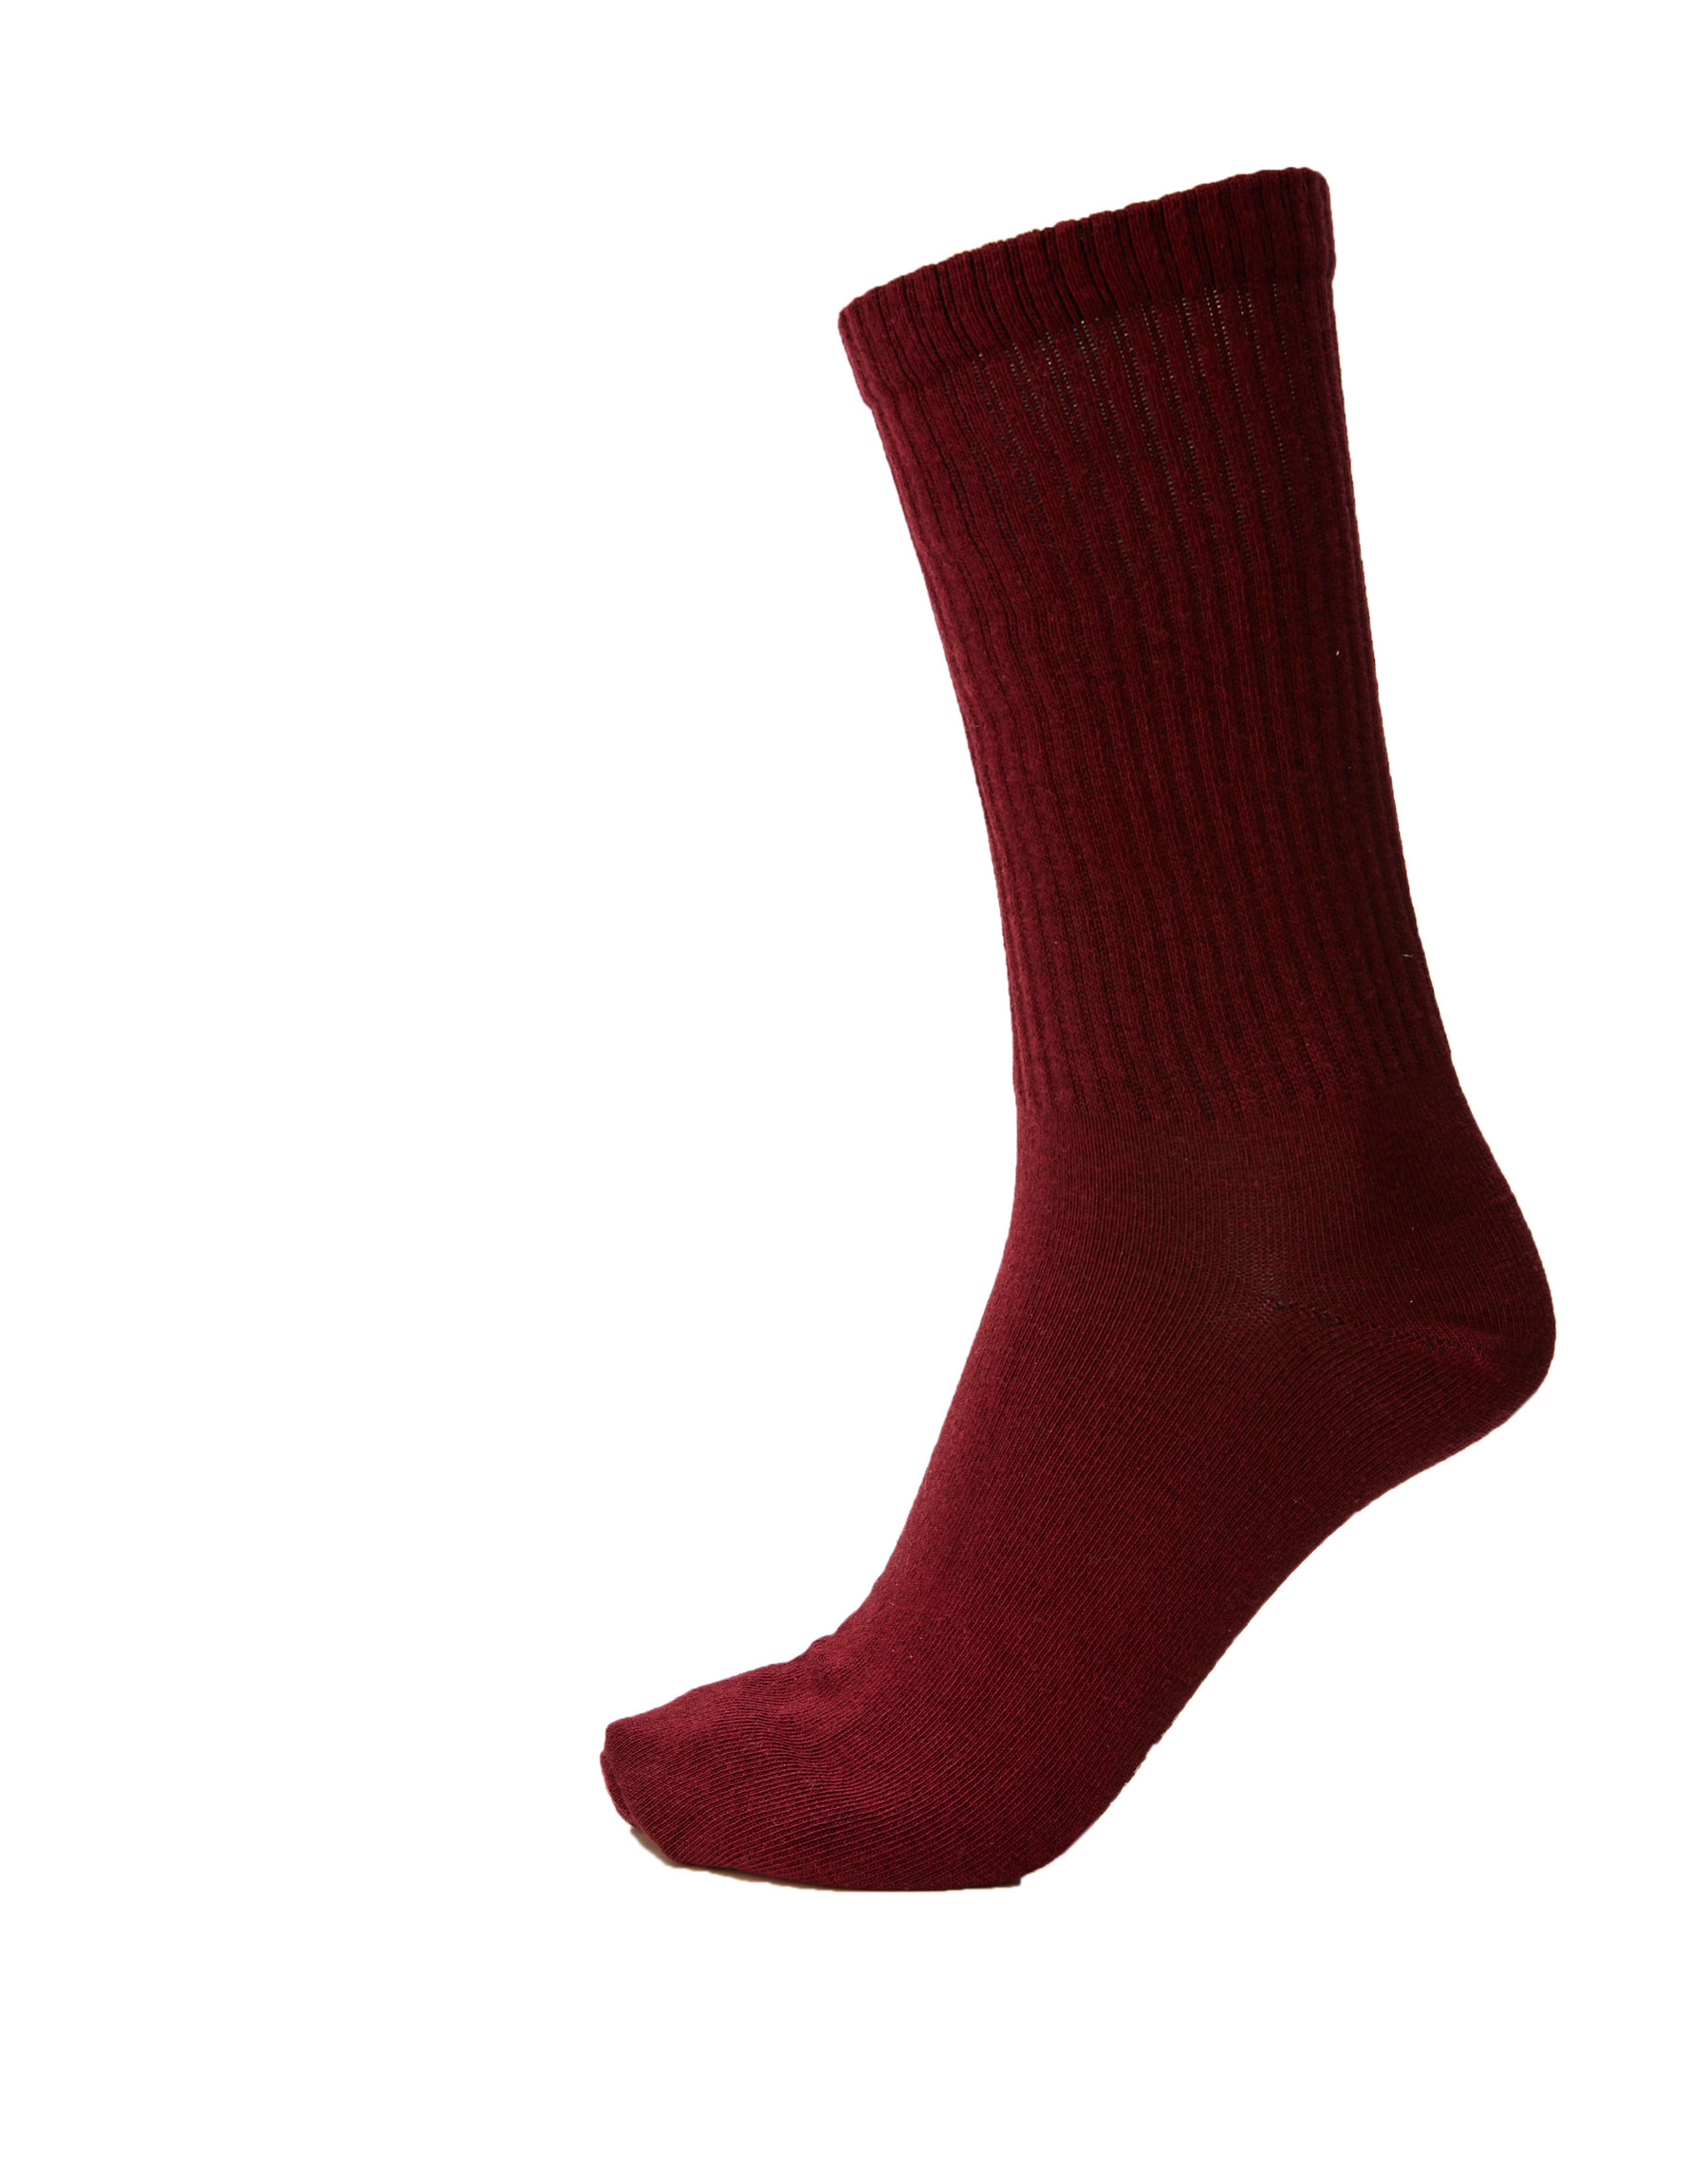 ЦВЕТ БУРГУНДСКОГО ВИНА Цветные спортивные носки из рифленого трикотажа Pull & Bear